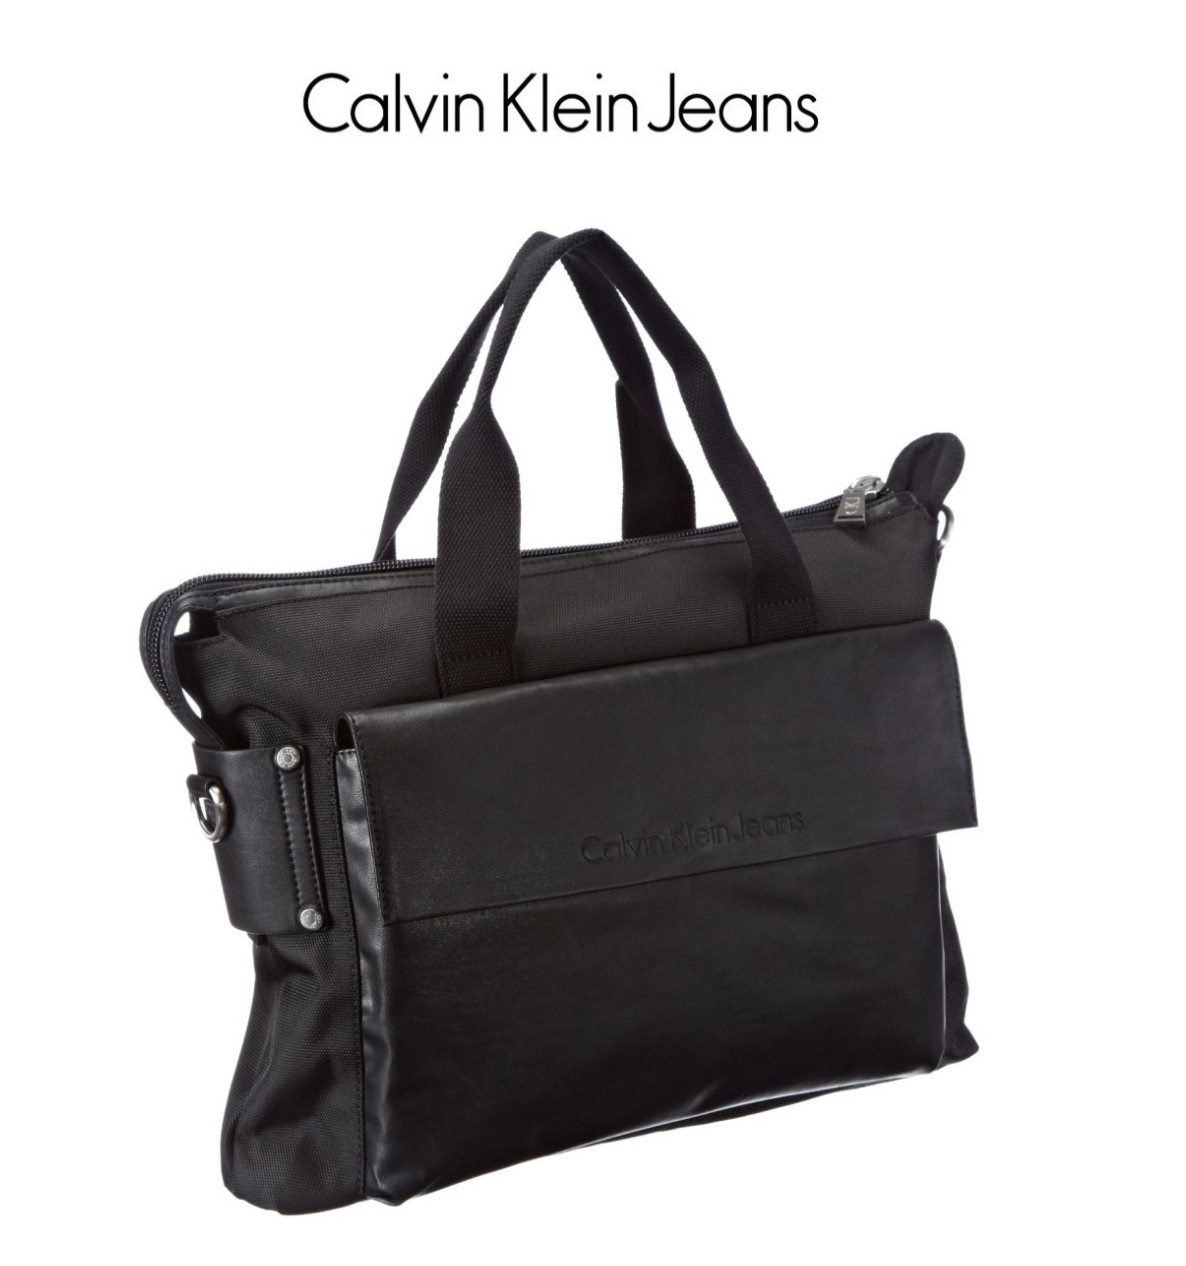 率性活力风 Calvin Klein Jeans男式肩包